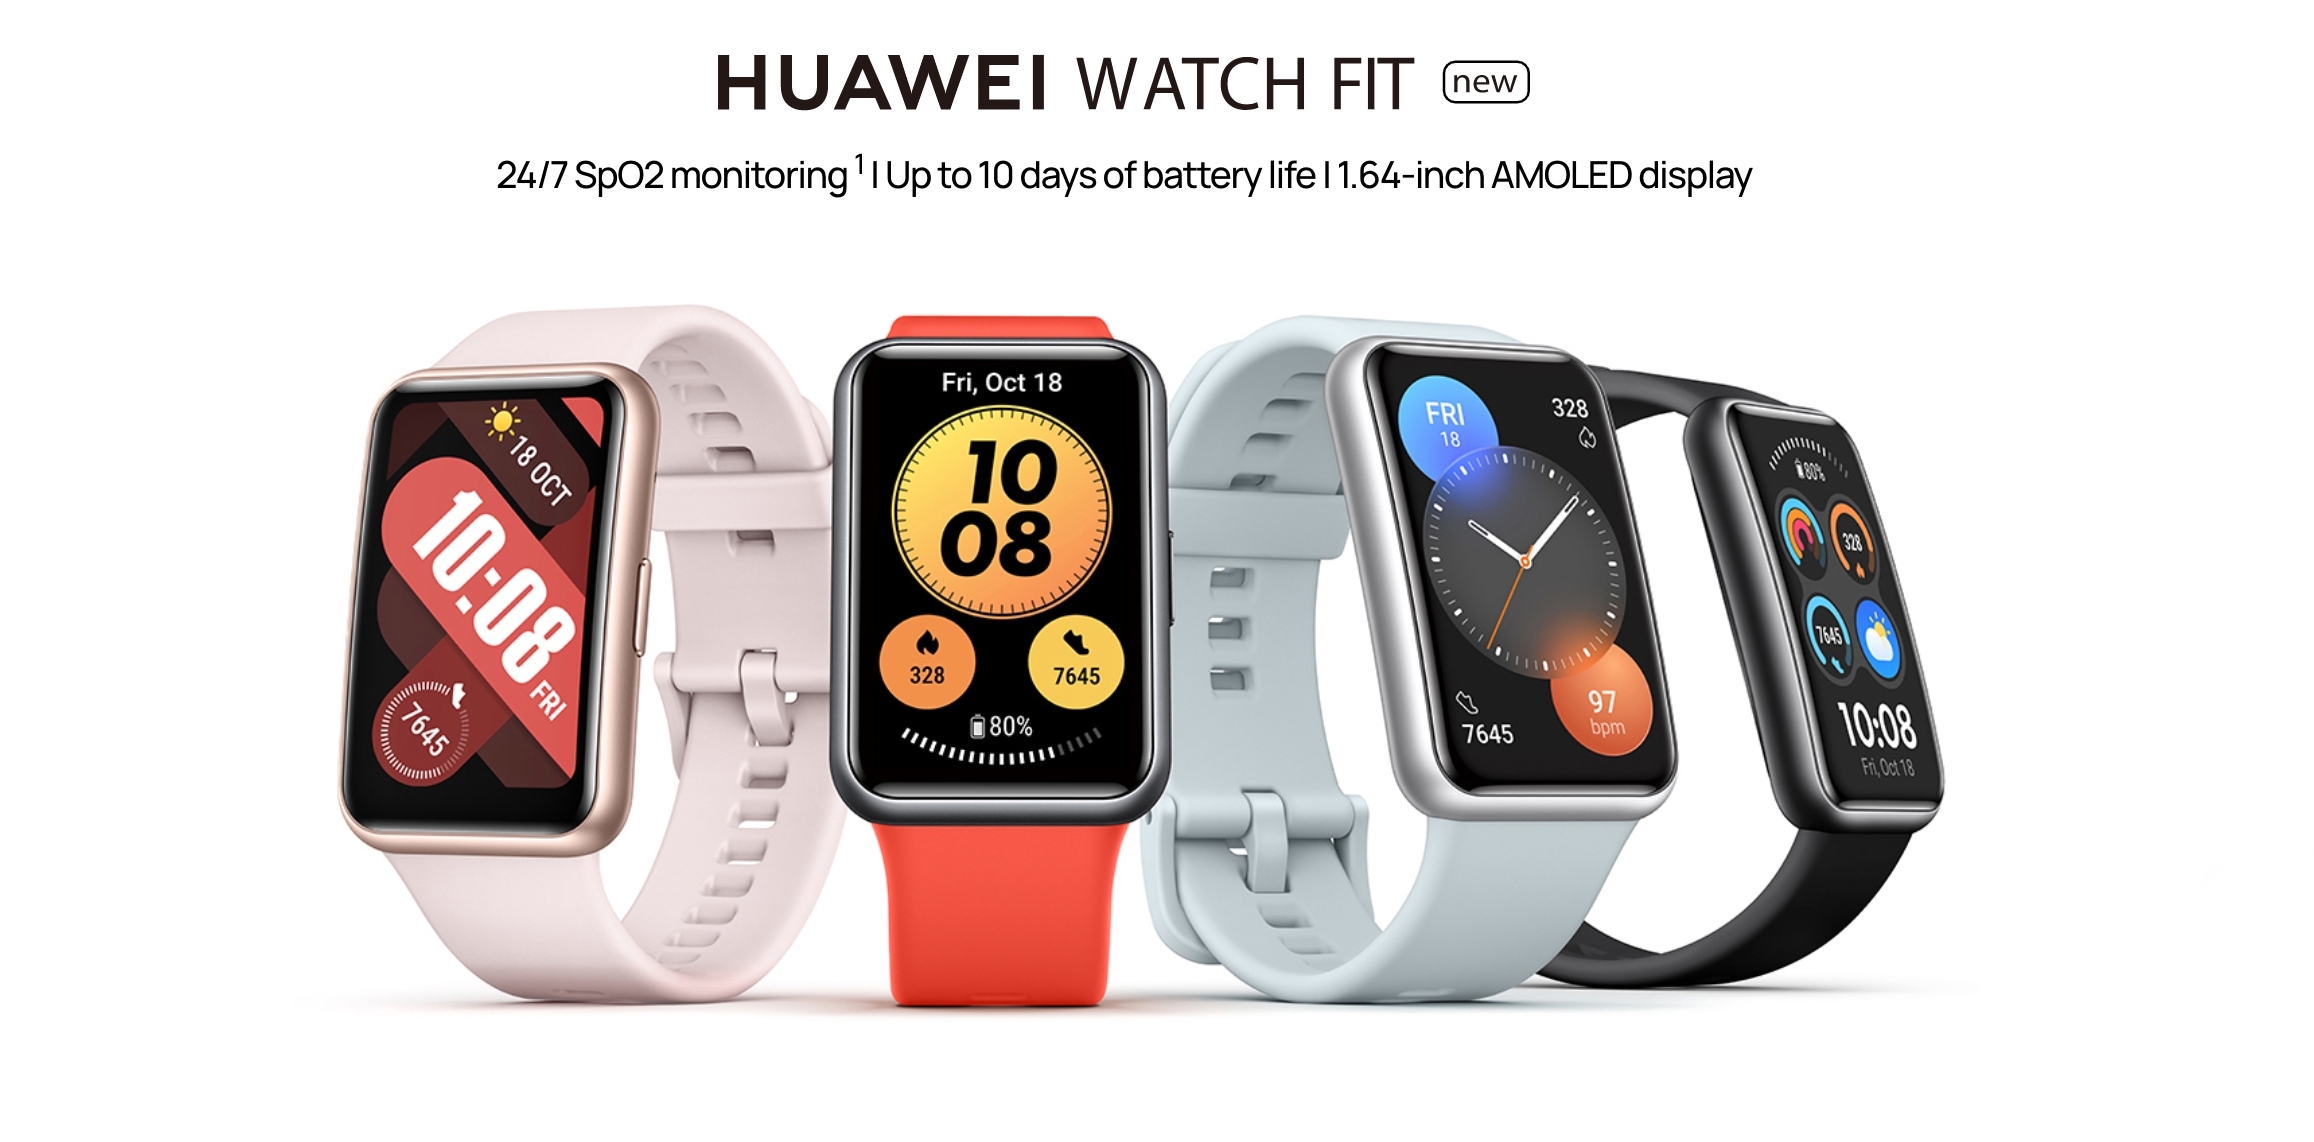 Huawei Watch Fit nowy z ekranem AMOLED, NFC i czujnikiem SpO2 pojawi się w Europie